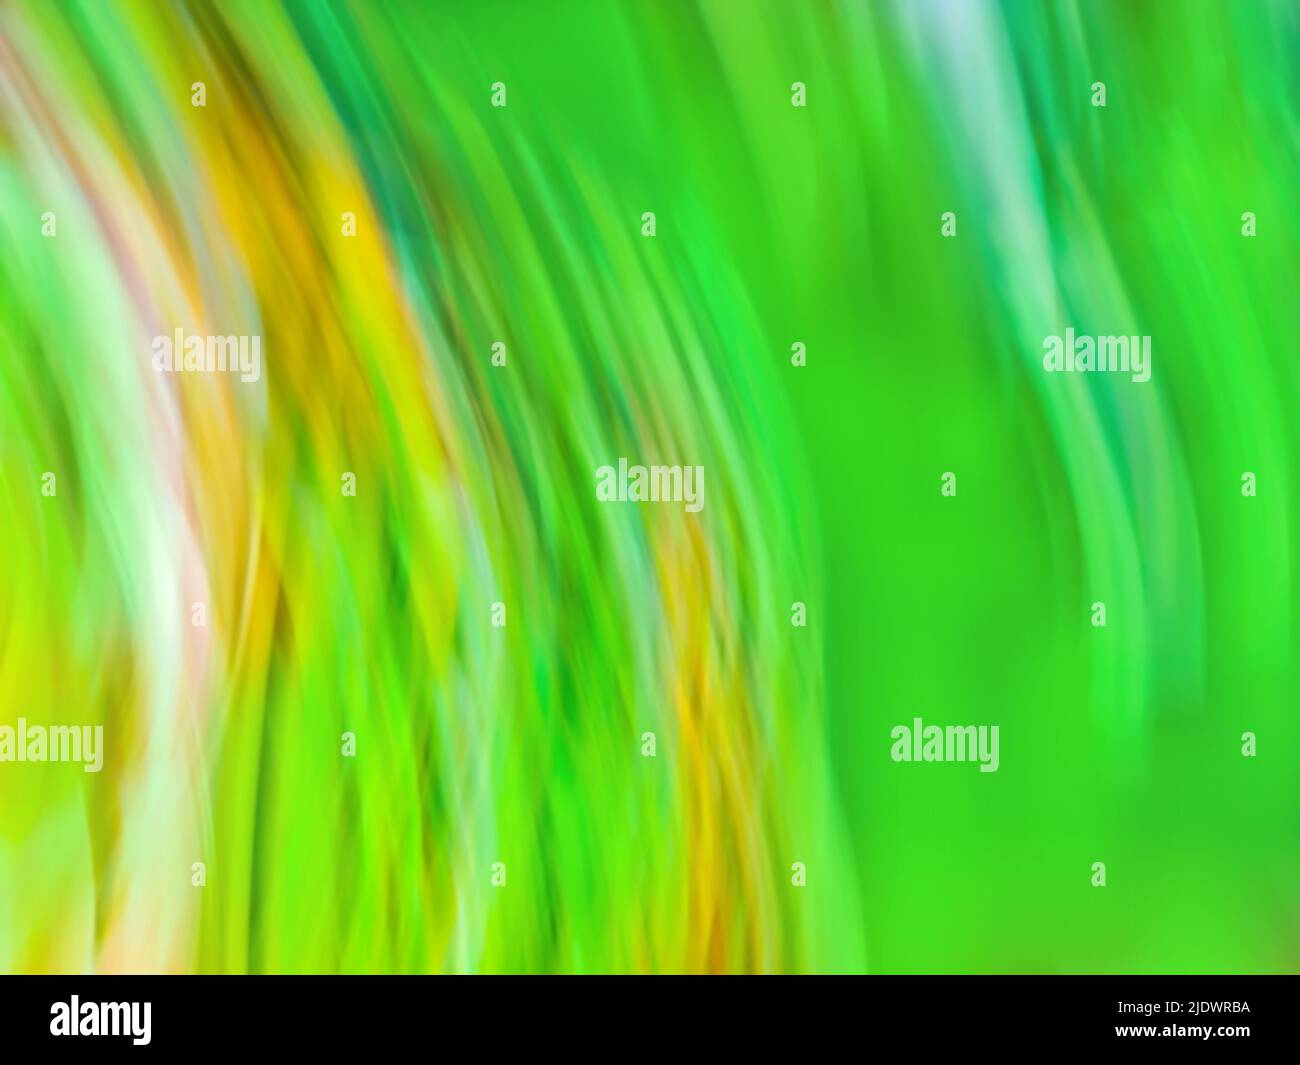 Arrière-plan abstrait en vert agrandi avec des lignes radiantes radiales. Image verte abstraite des traces de zoom léger. Banque D'Images